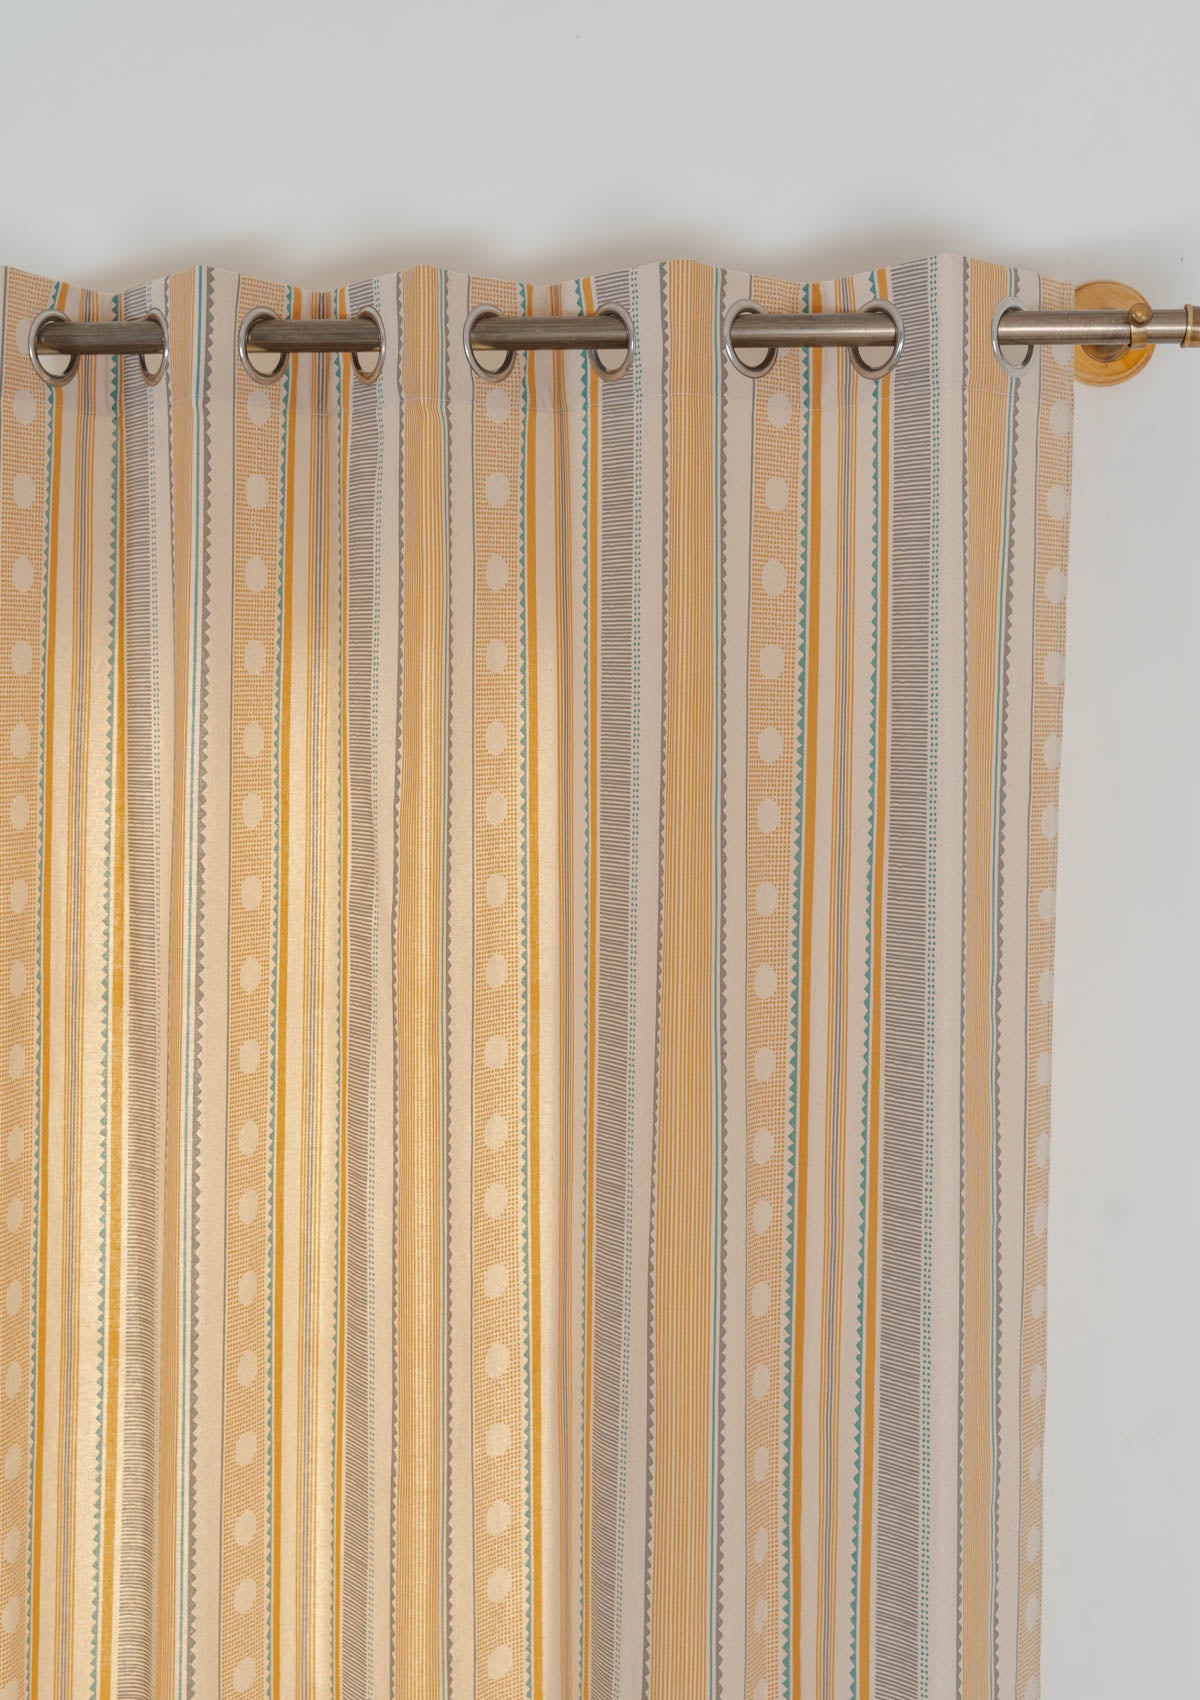 Buru 100% cotton boho curtain for living room - Room darkening - Mustard - Single